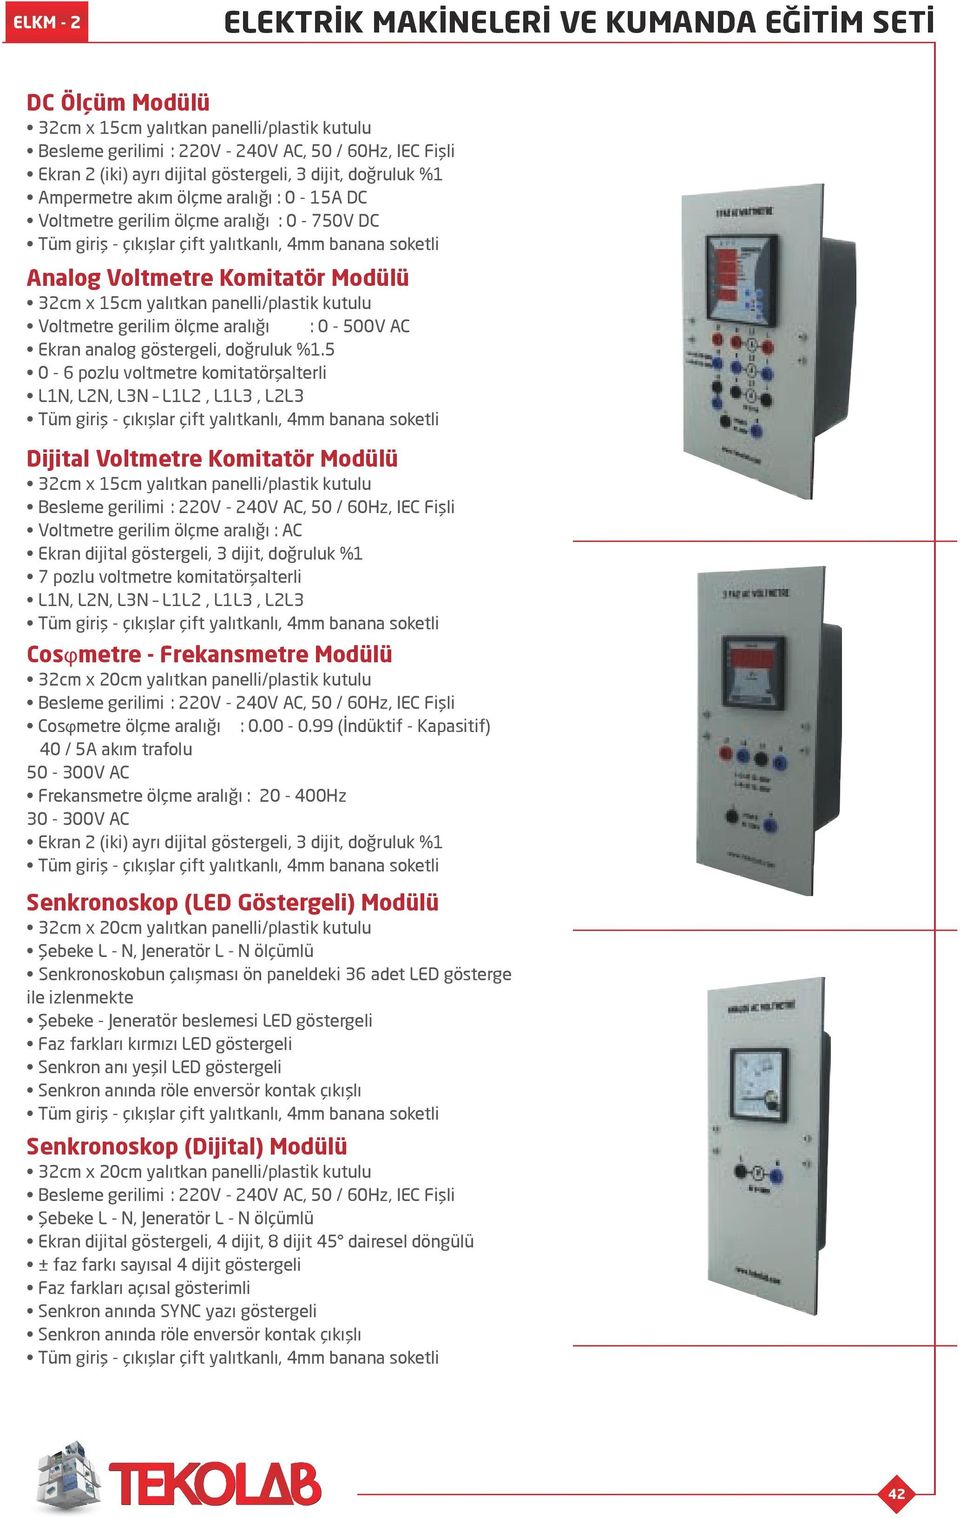 5 0-6 pozlu voltmetre komitatörşalterli L1N, L2N, L3N L1L2, L1L3, L2L3 Dijital Voltmetre Komitatör Modülü Voltmetre gerilim ölçme aralığı : AC Ekran dijital göstergeli, 3 dijit, doğruluk %1 7 pozlu